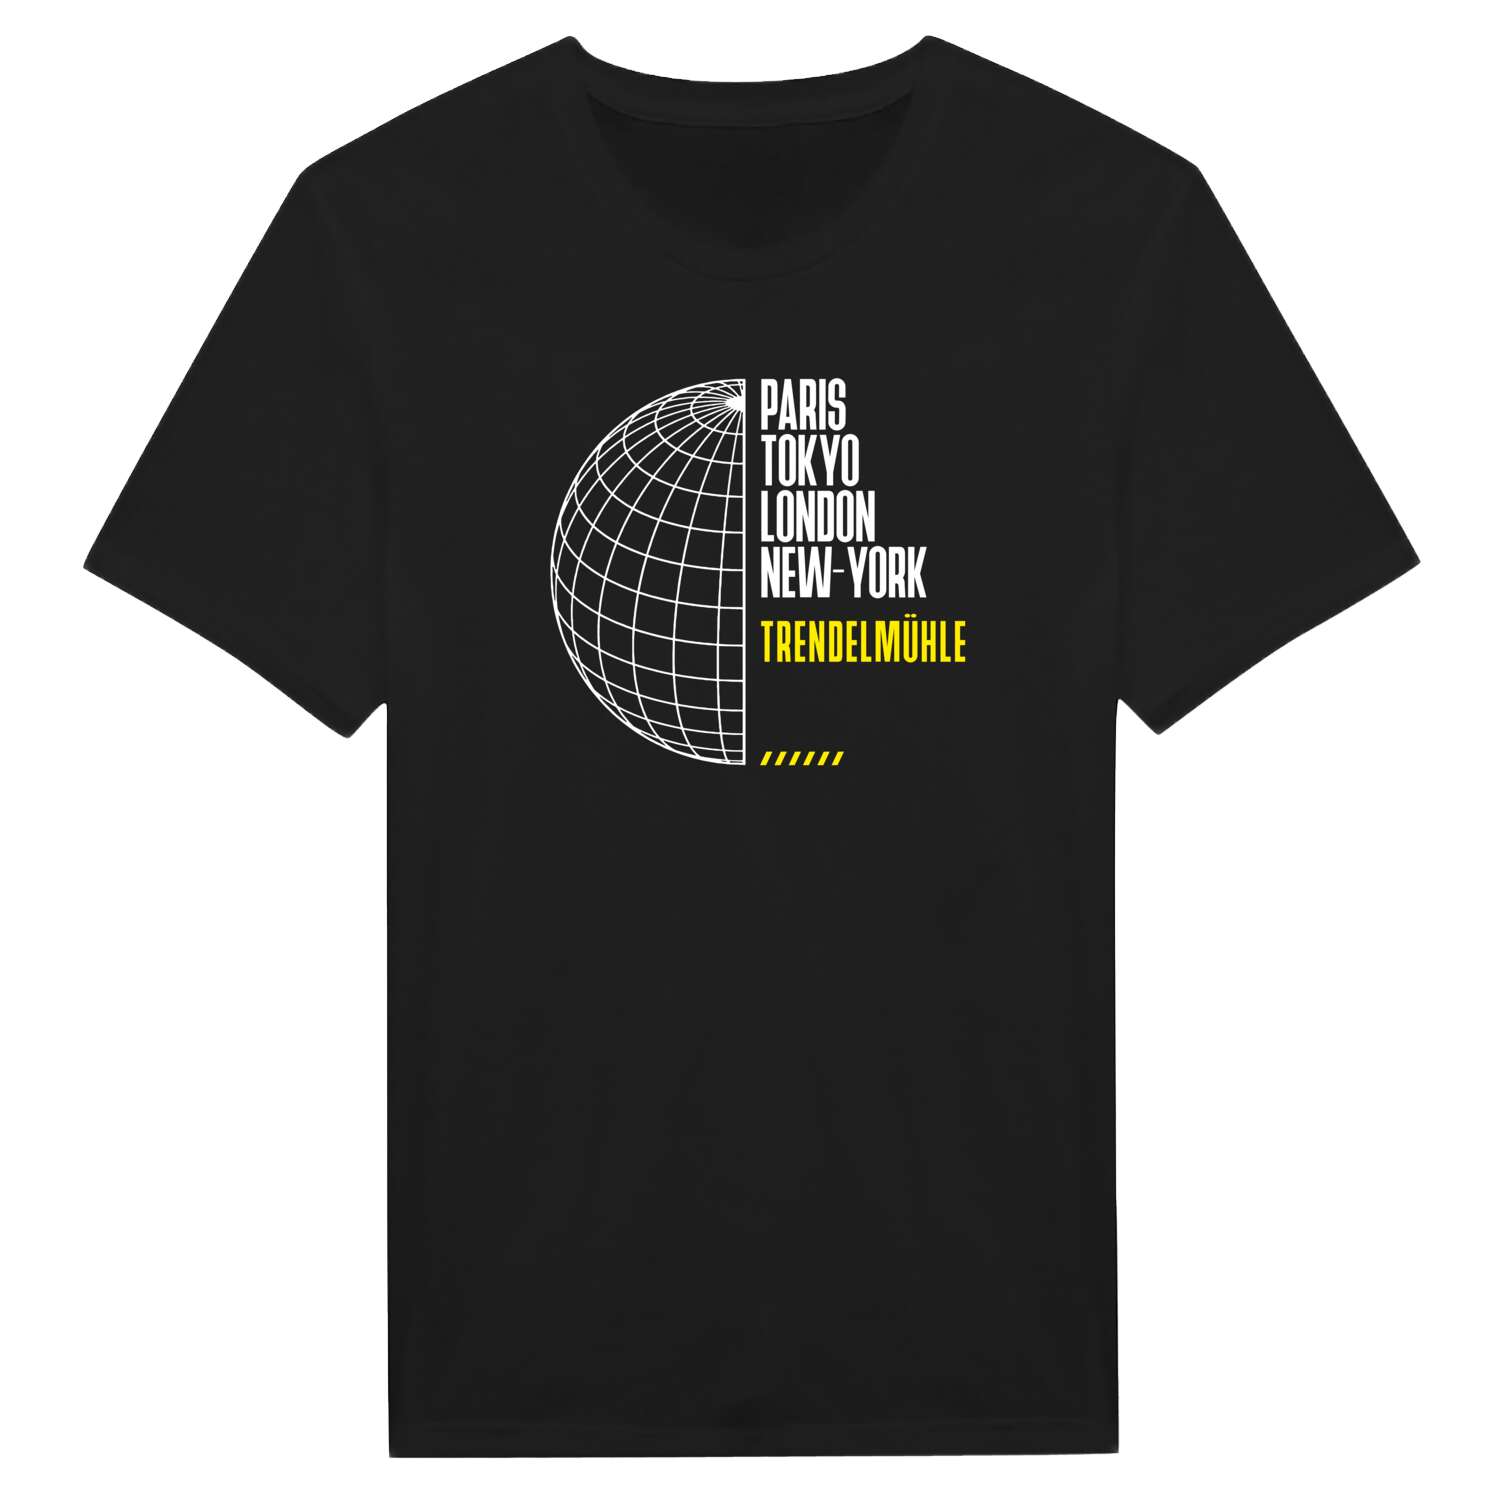 Trendelmühle T-Shirt »Paris Tokyo London«